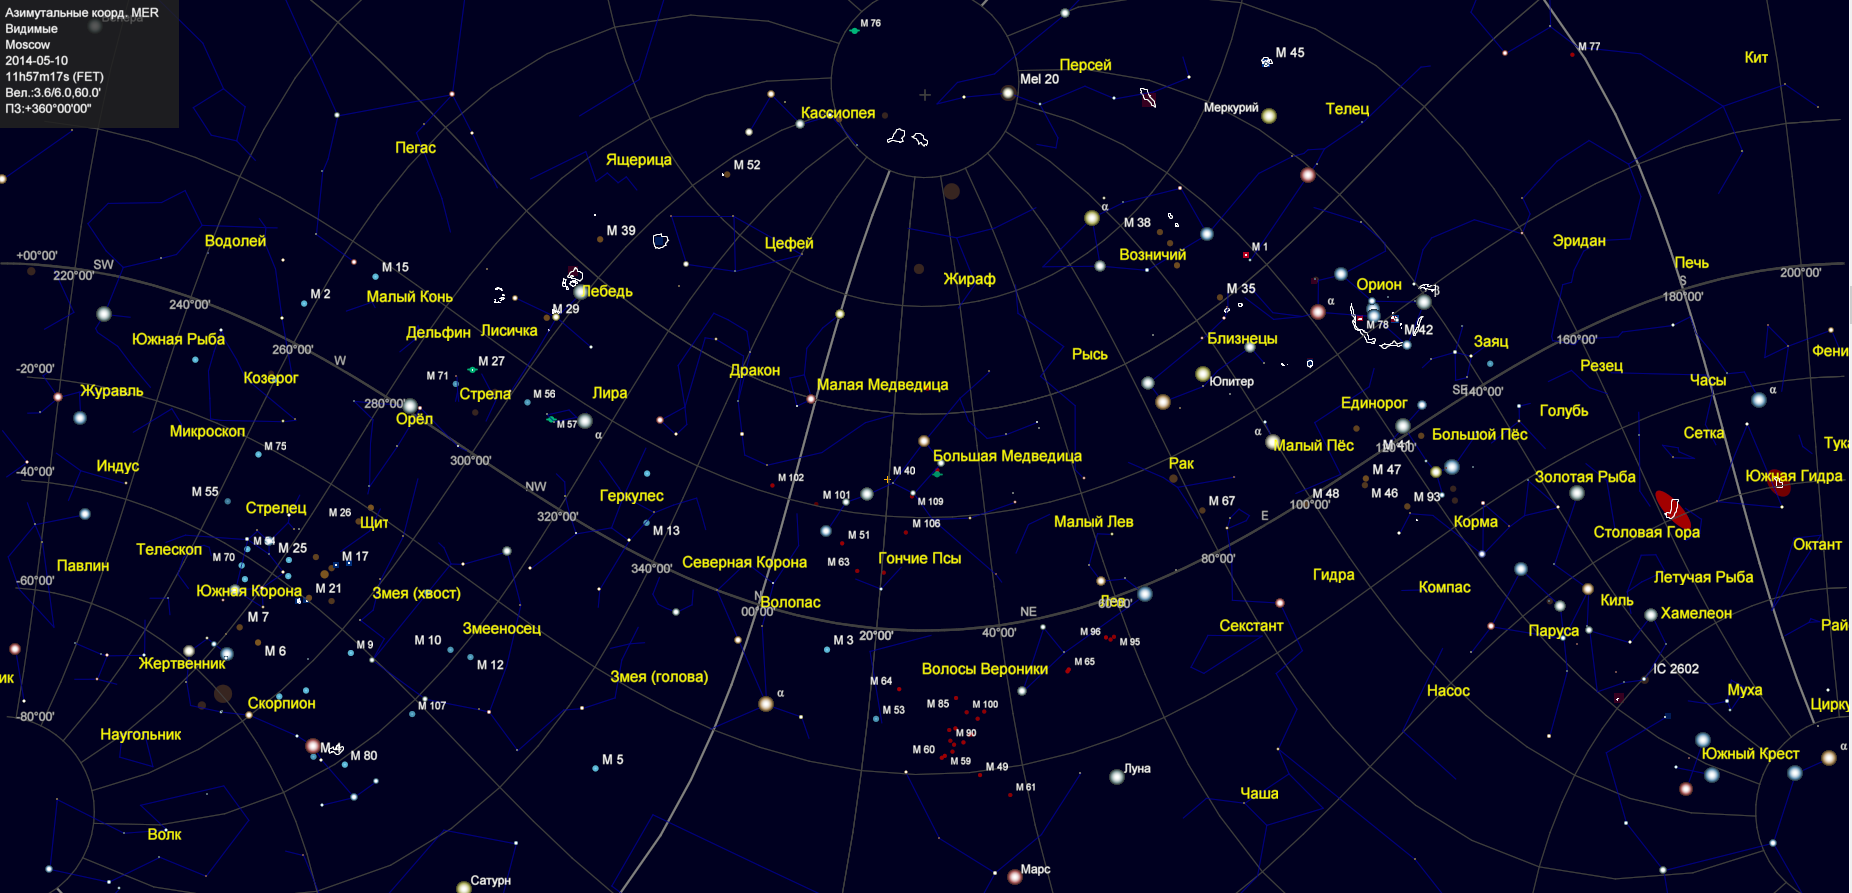 Звезды и их названия. Карта звездного неба с названиями звезд Северного полушария. Полярная звезда на карте звездного неба Северного полушария. Карта звездного неба 88 созвездий. Карта звёздного неба Северное полушарие звезды.